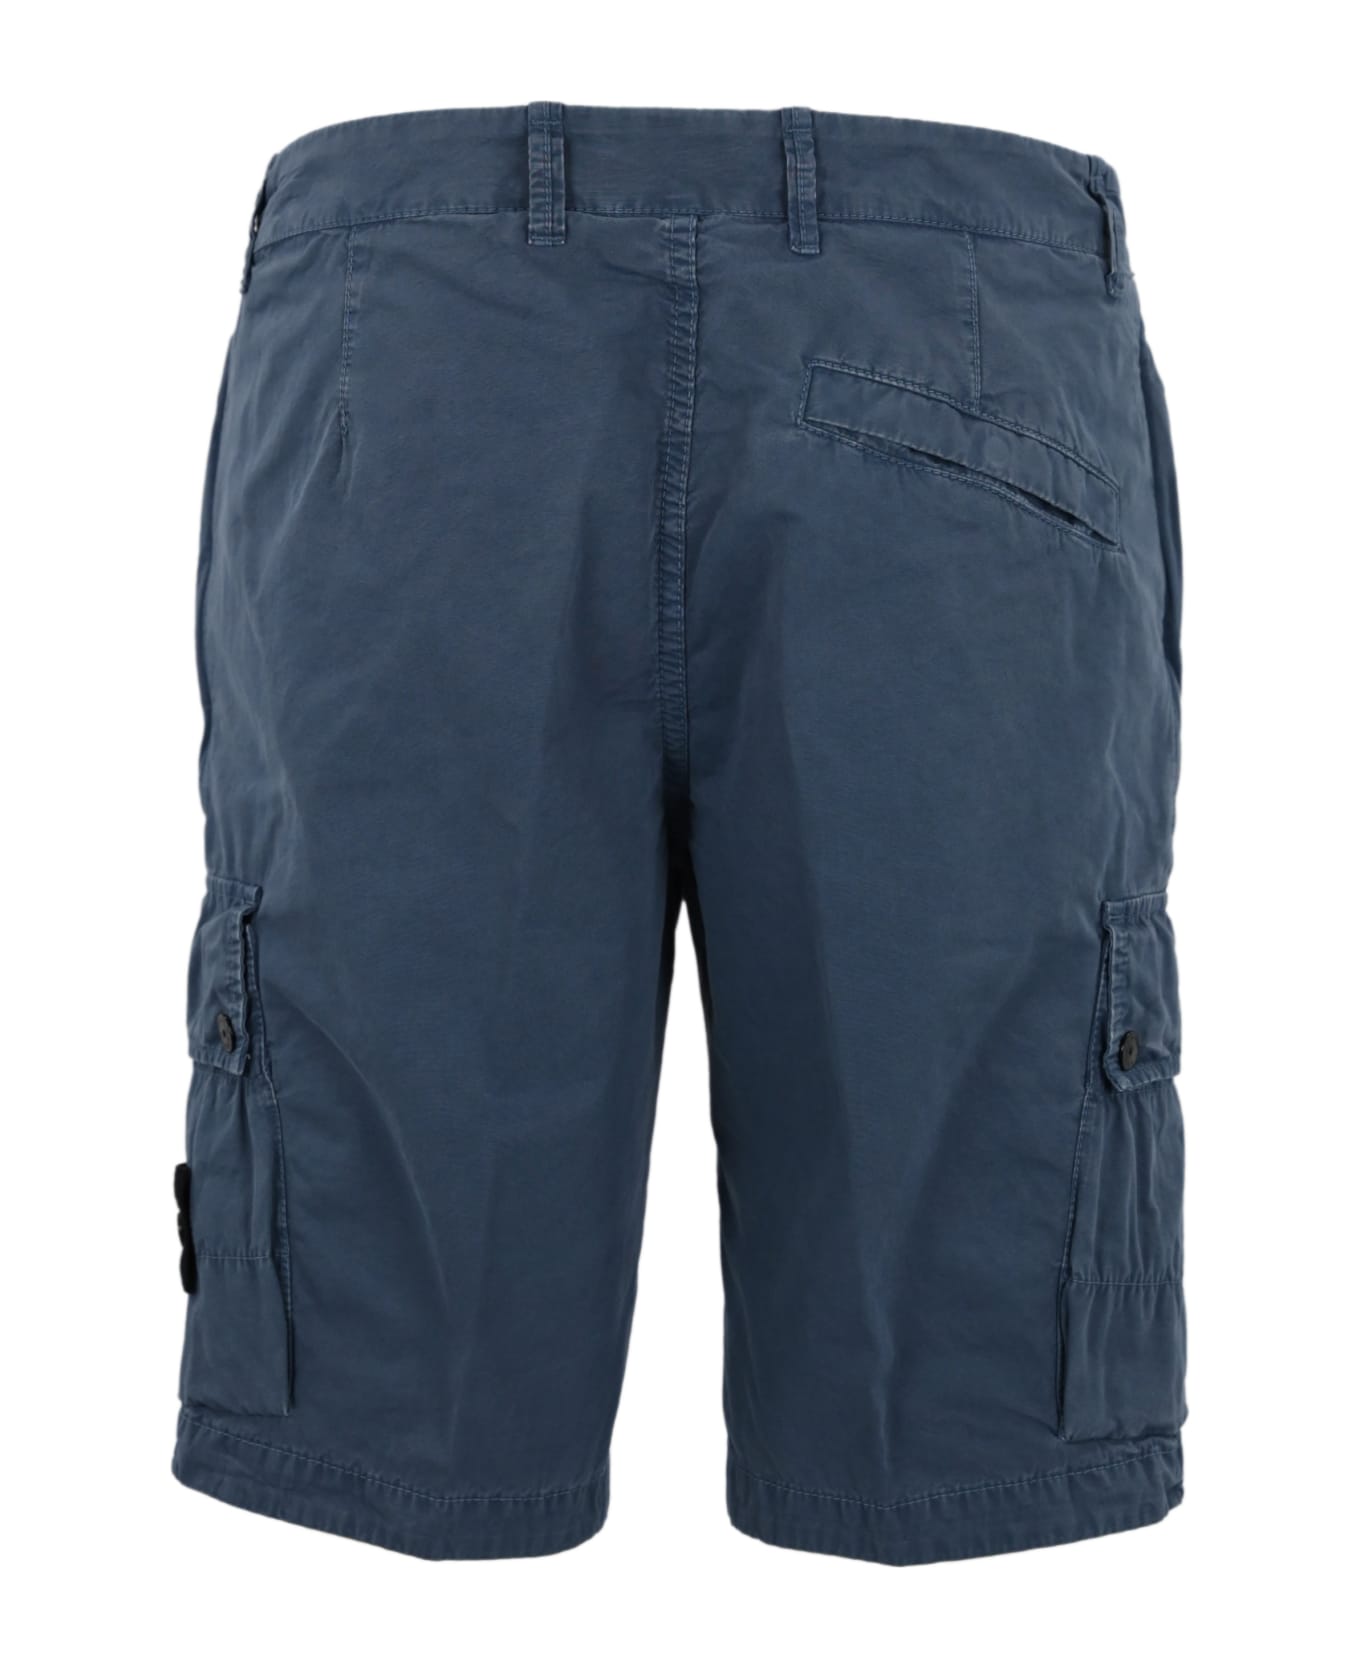 Stone Island Bermuda Shorts In Cotton Canvas - Blue ショートパンツ